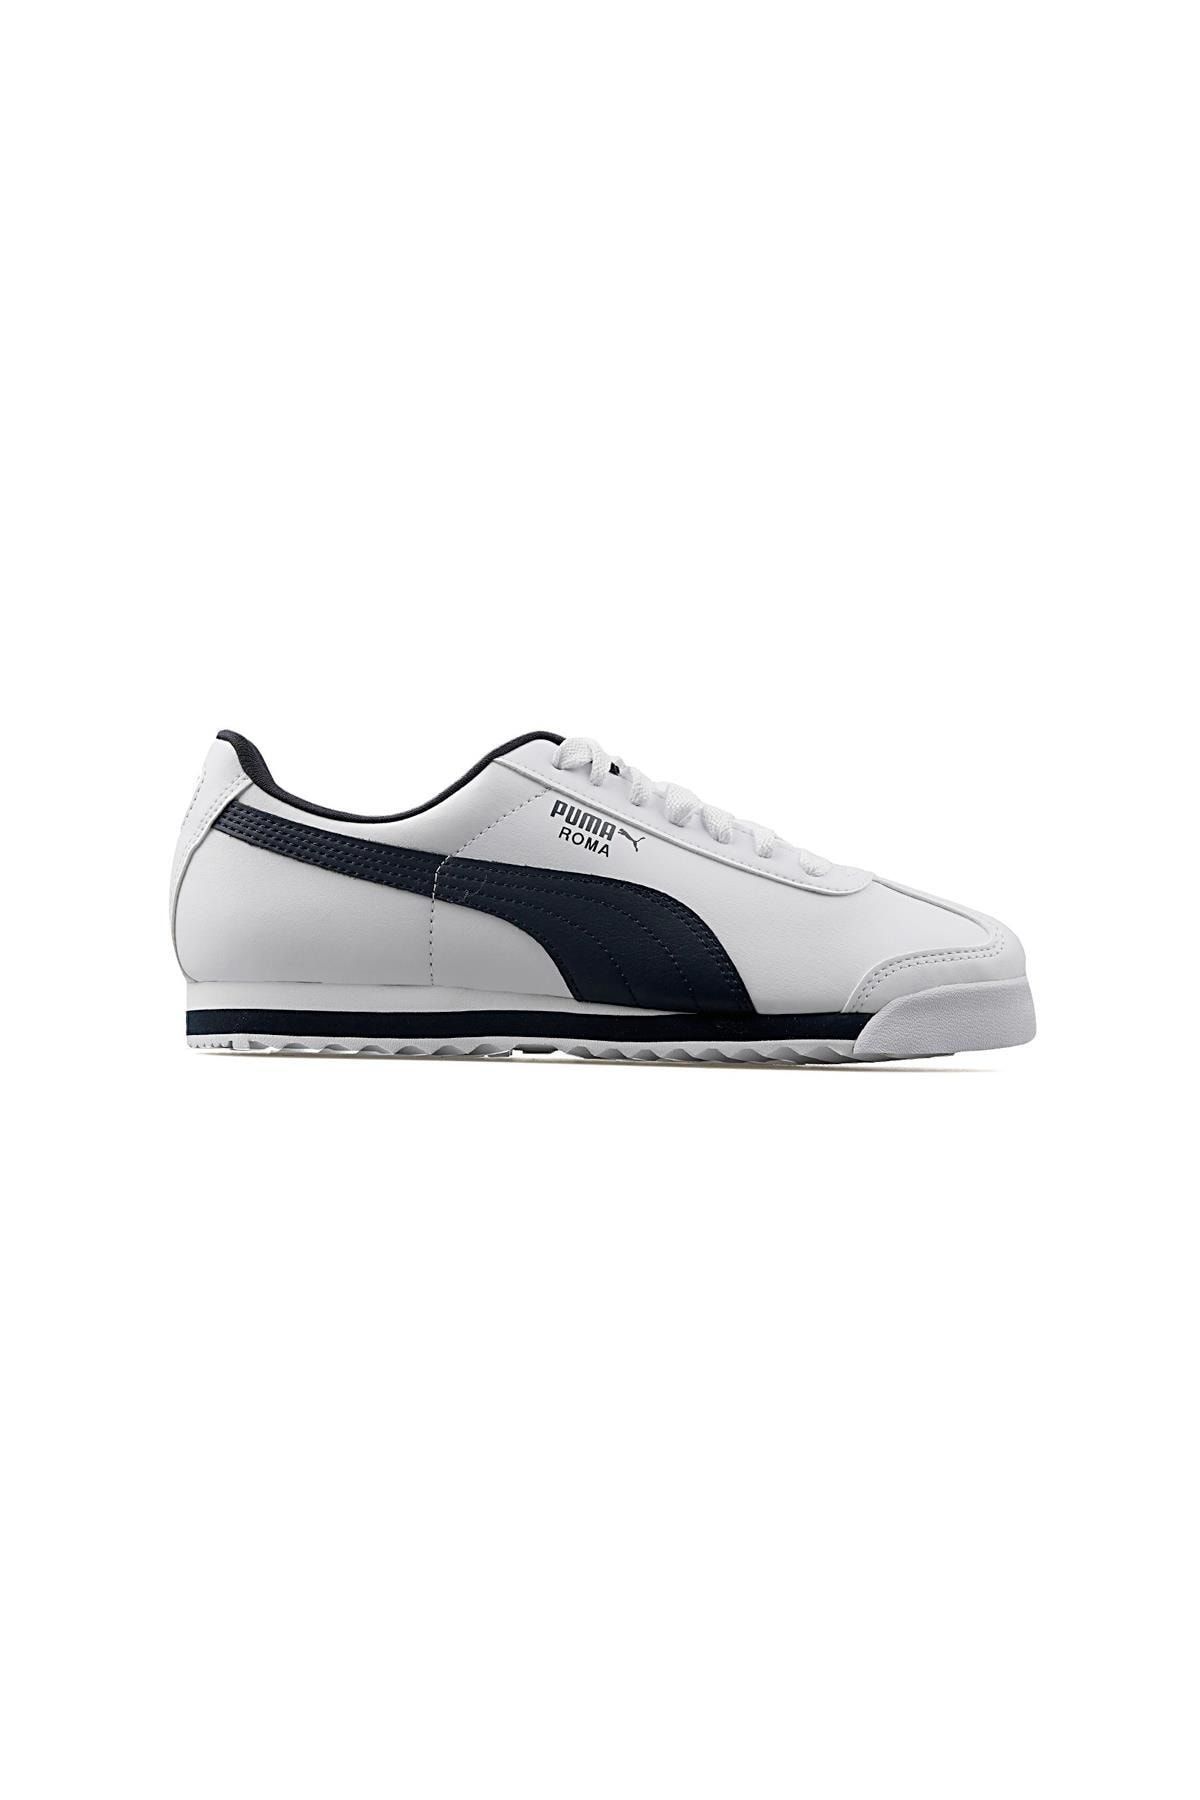 Puma 35357204, Erkek Günlük Sneaker Ayakkabı